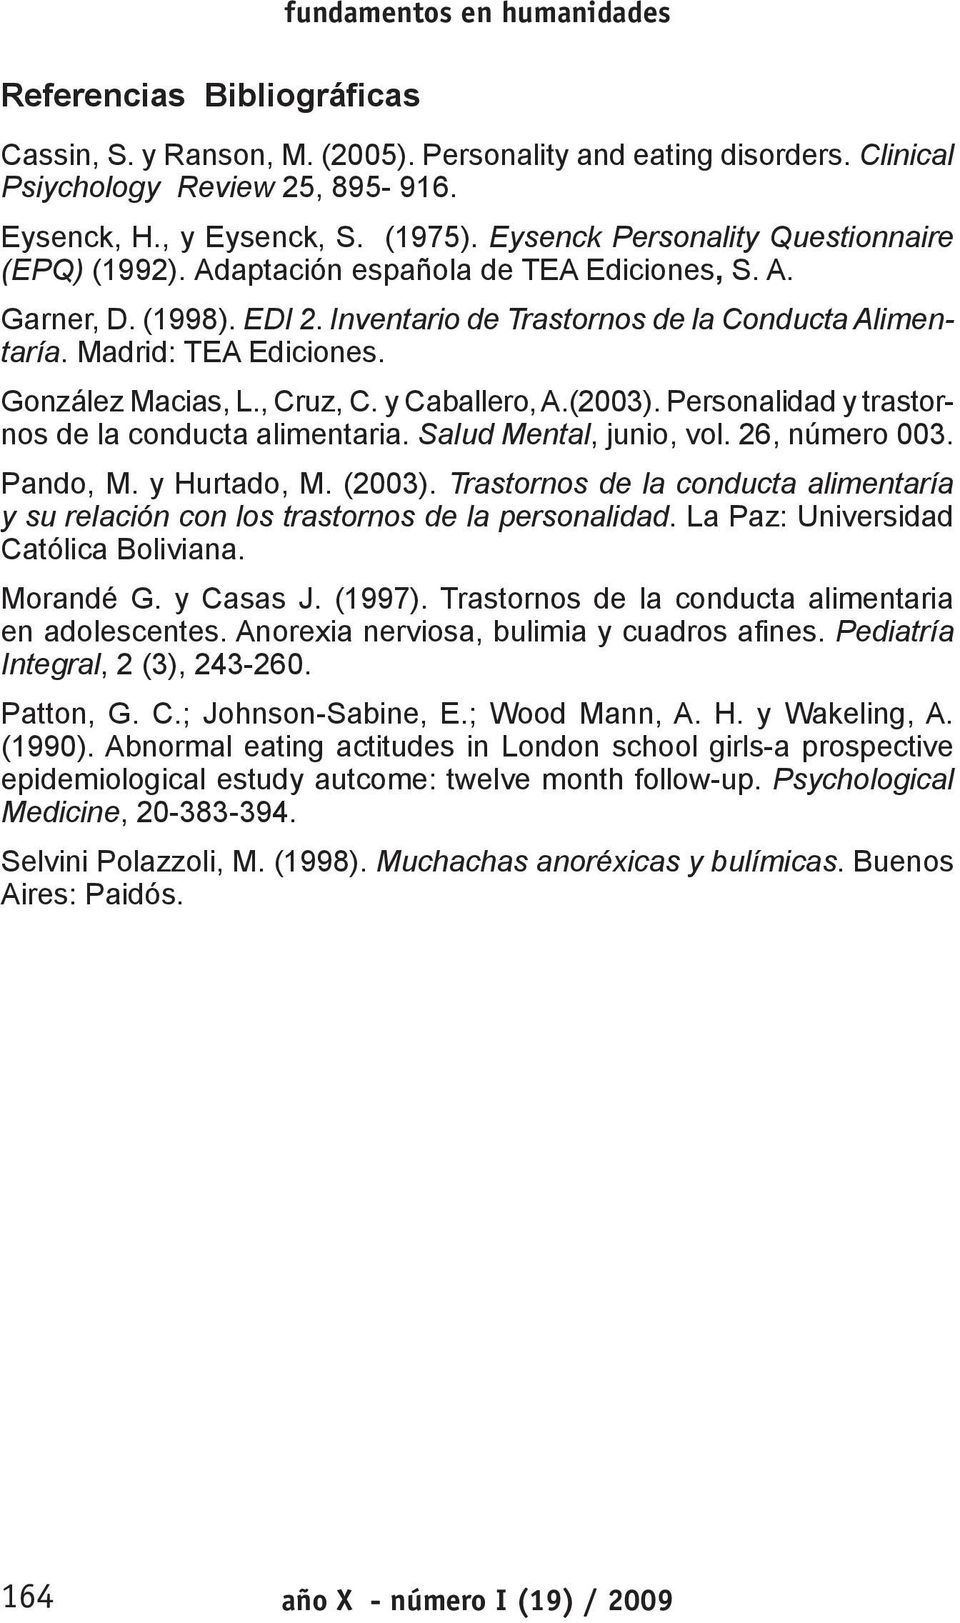 González Macias, L., Cruz, C. y Caballero, A.(23). Personalidad y trastornos de la conducta alimentaria. Salud Mental, junio, vol. 26, número 3. Pando, M. y Hurtado, M. (23).